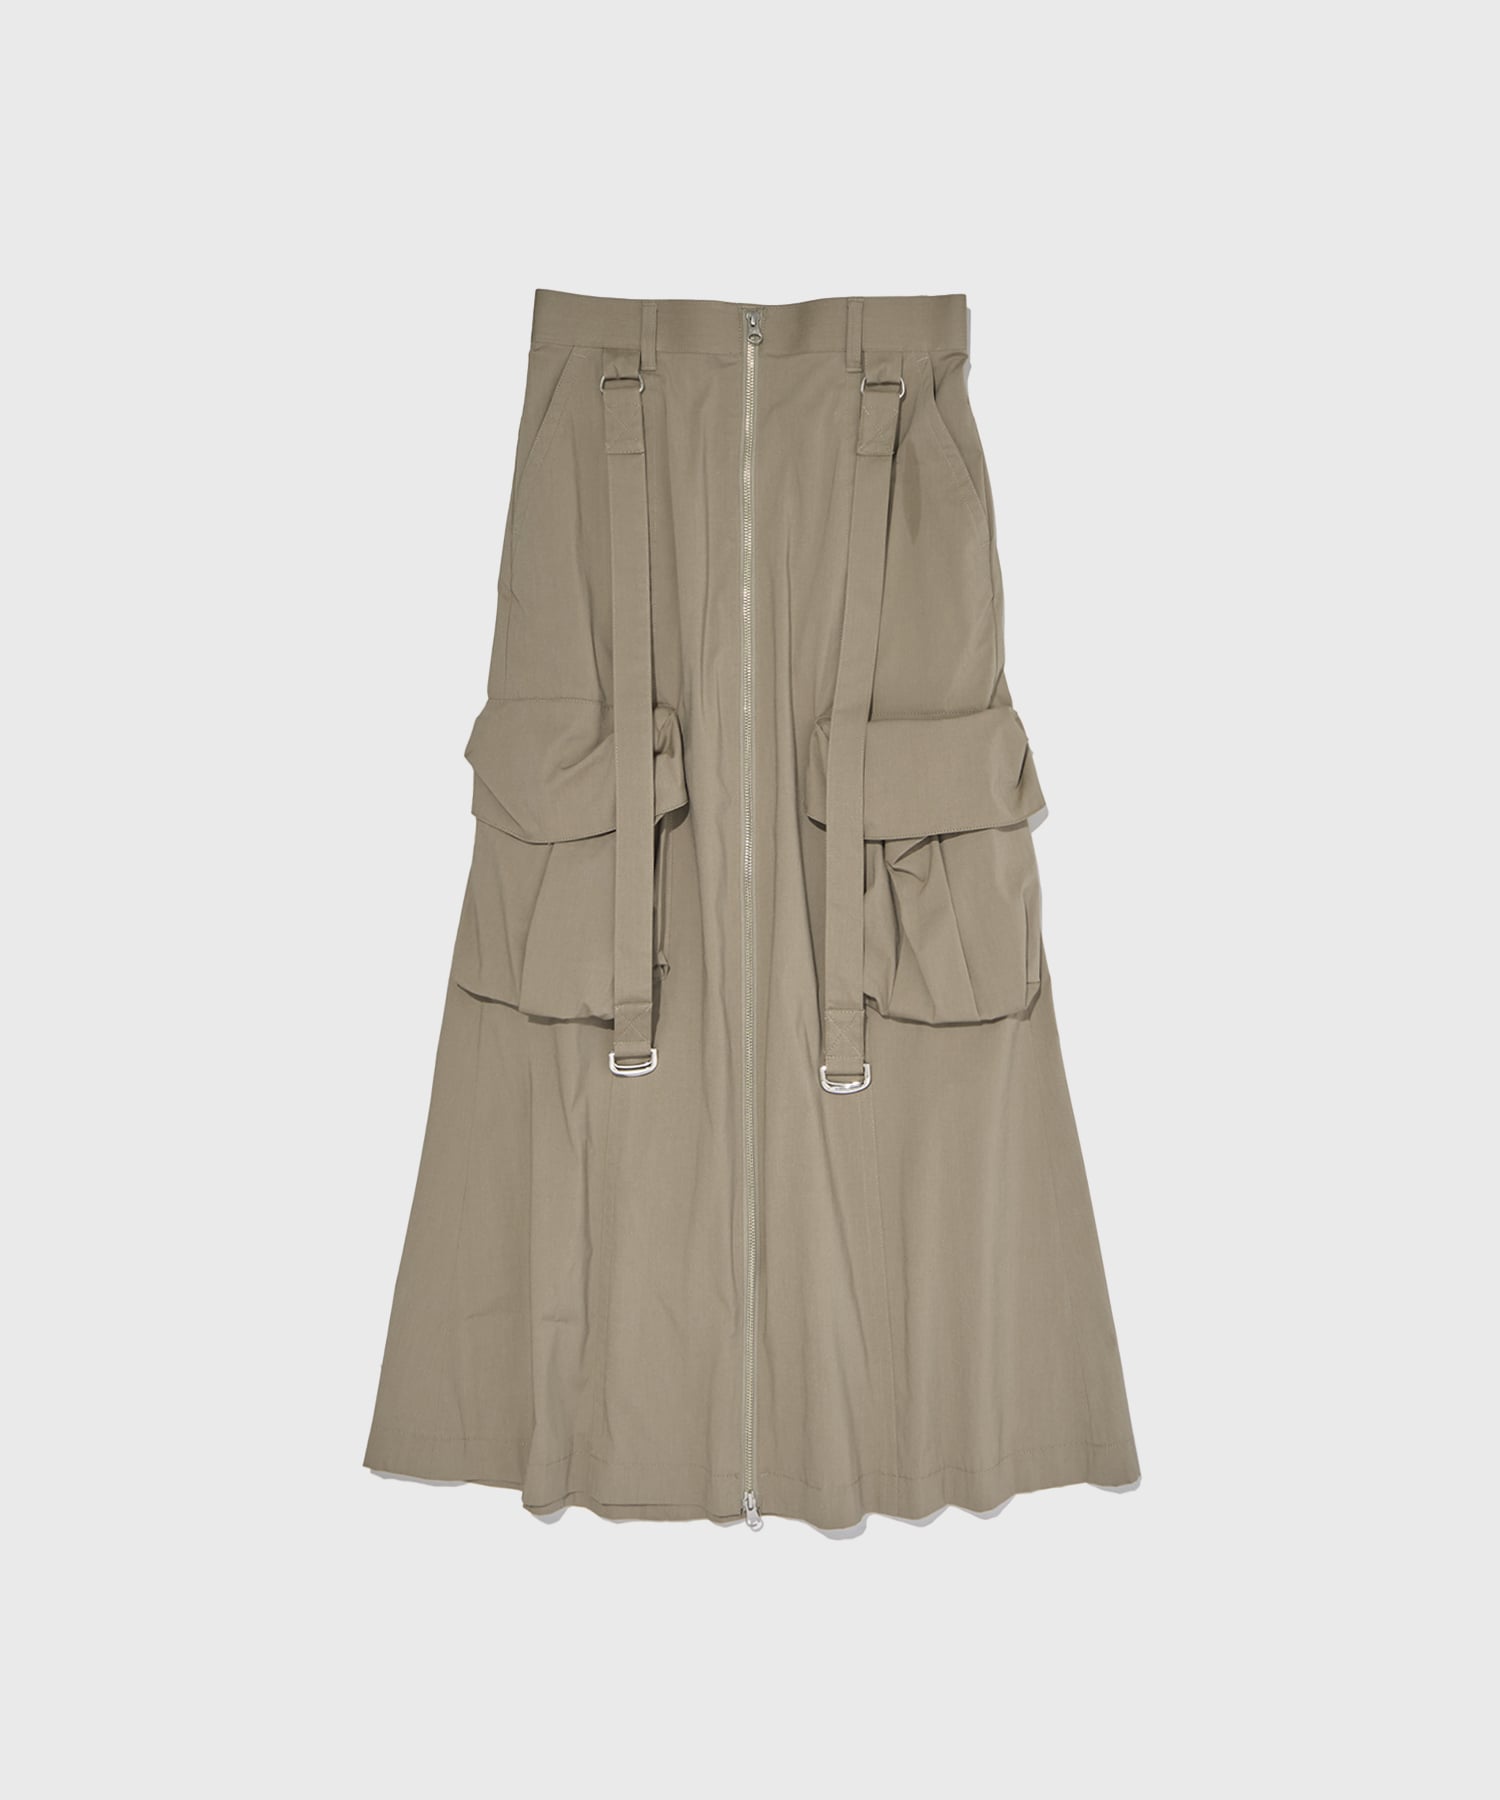 Zip Up Military Skirt